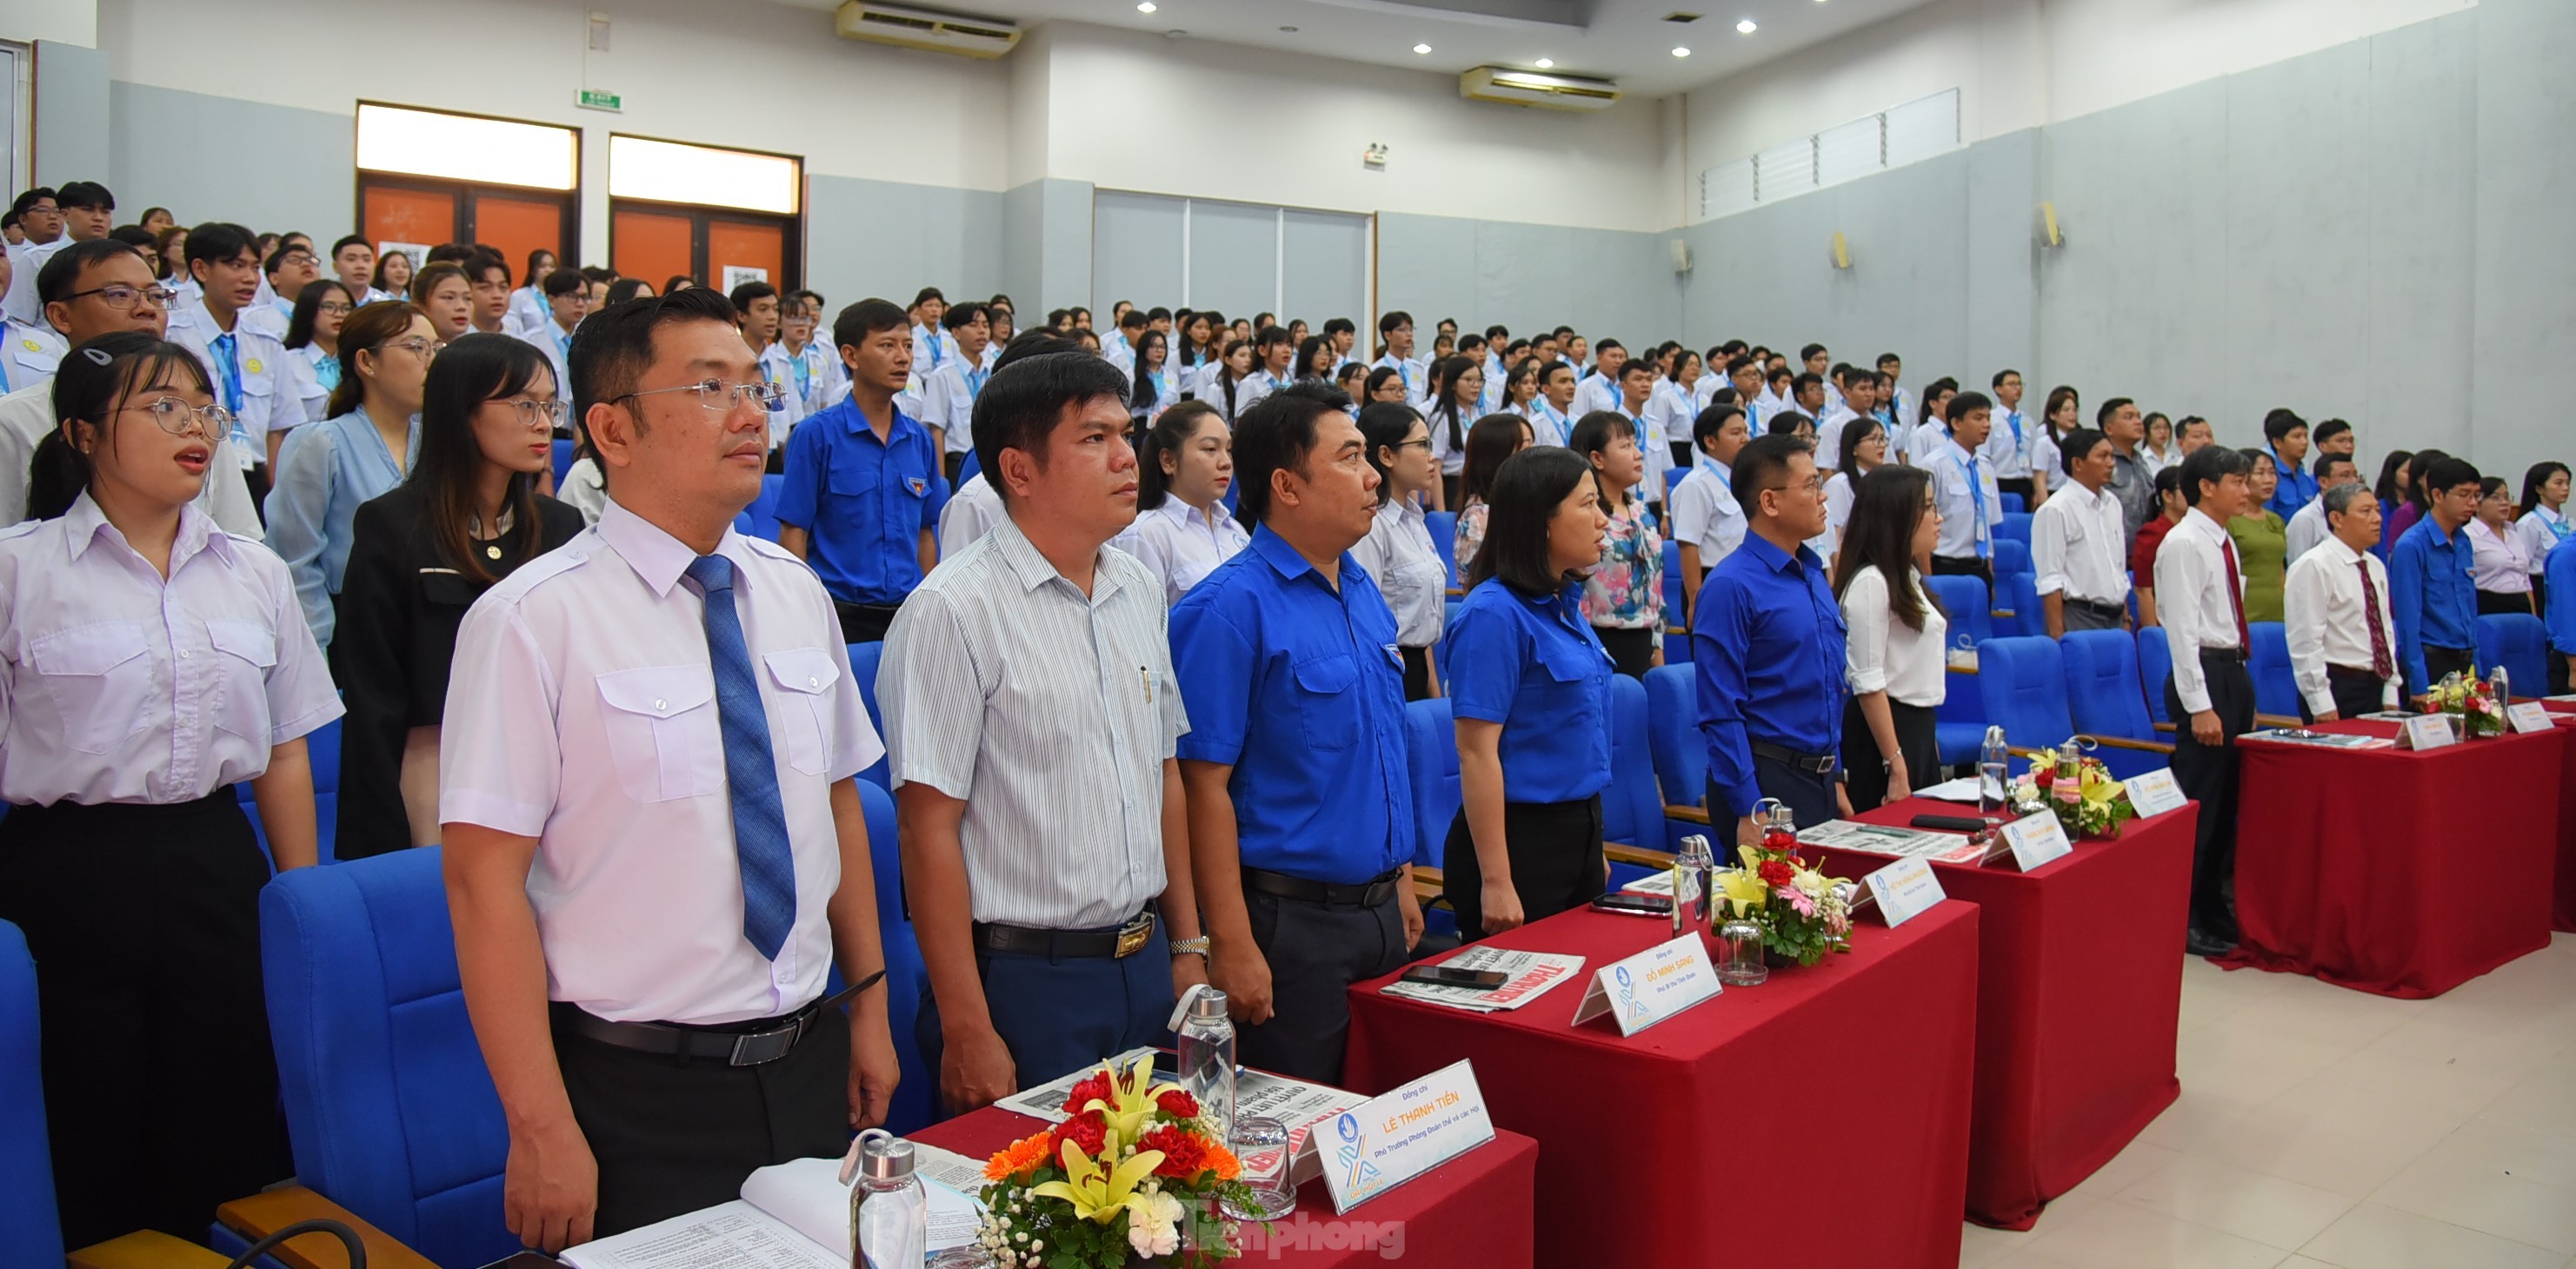 Bạn Phan Hoàng Anh được bầu làm Chủ tịch Hội Sinh viên trường Đại học An Giang